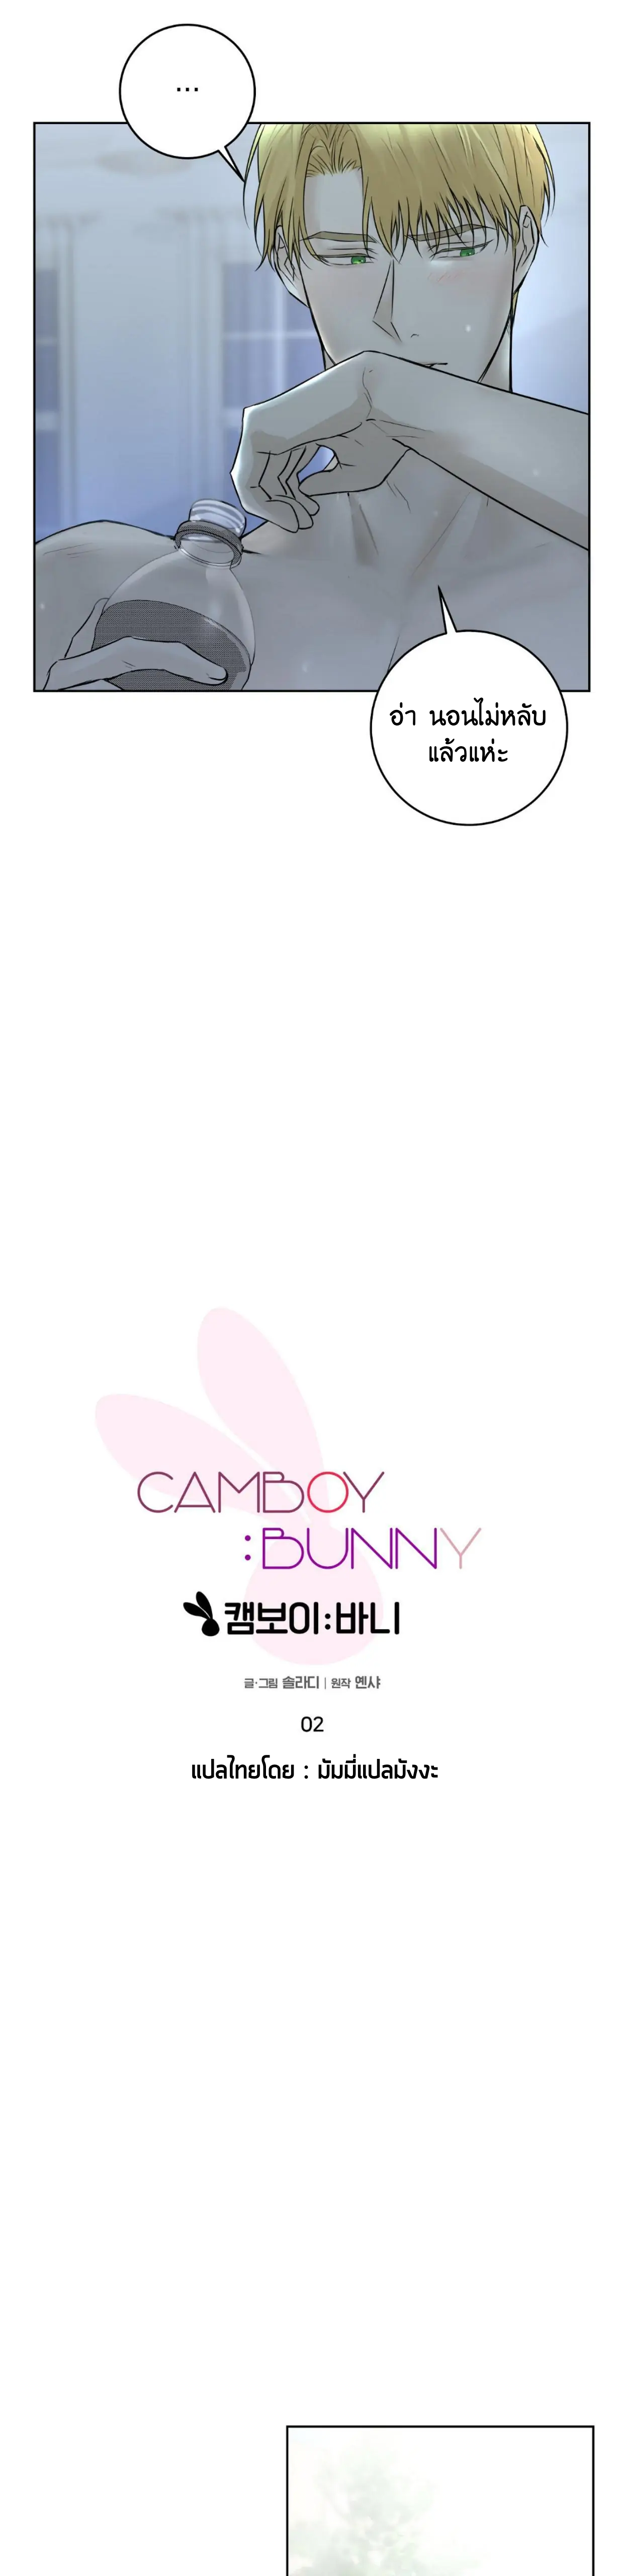 Camboy Bunny 2 (10)